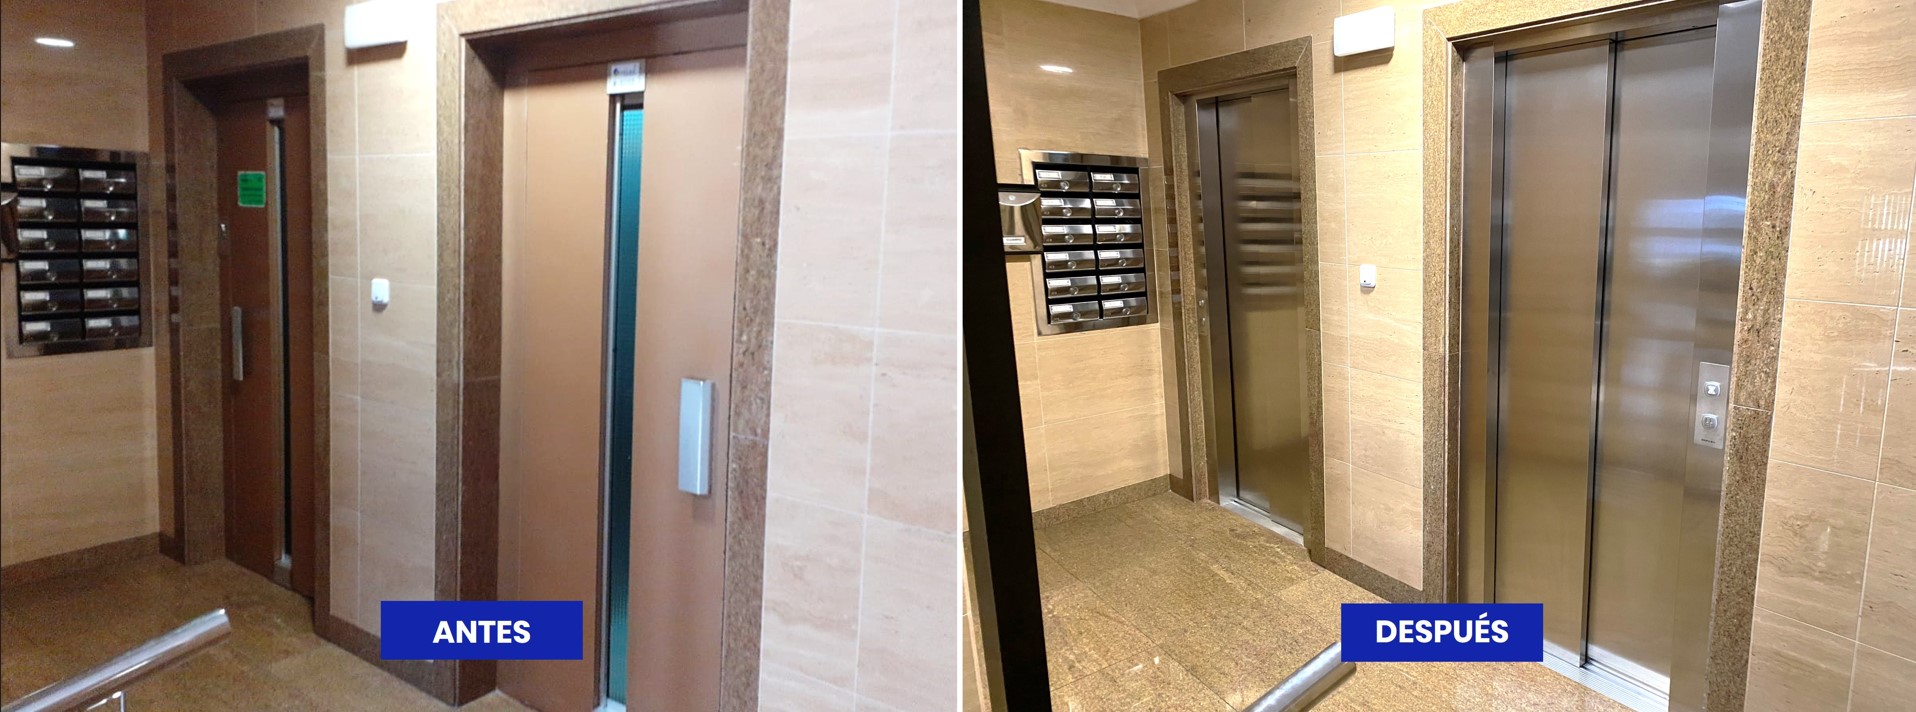 Antes y después de la modernización de las puertas de rellano de un ascensor